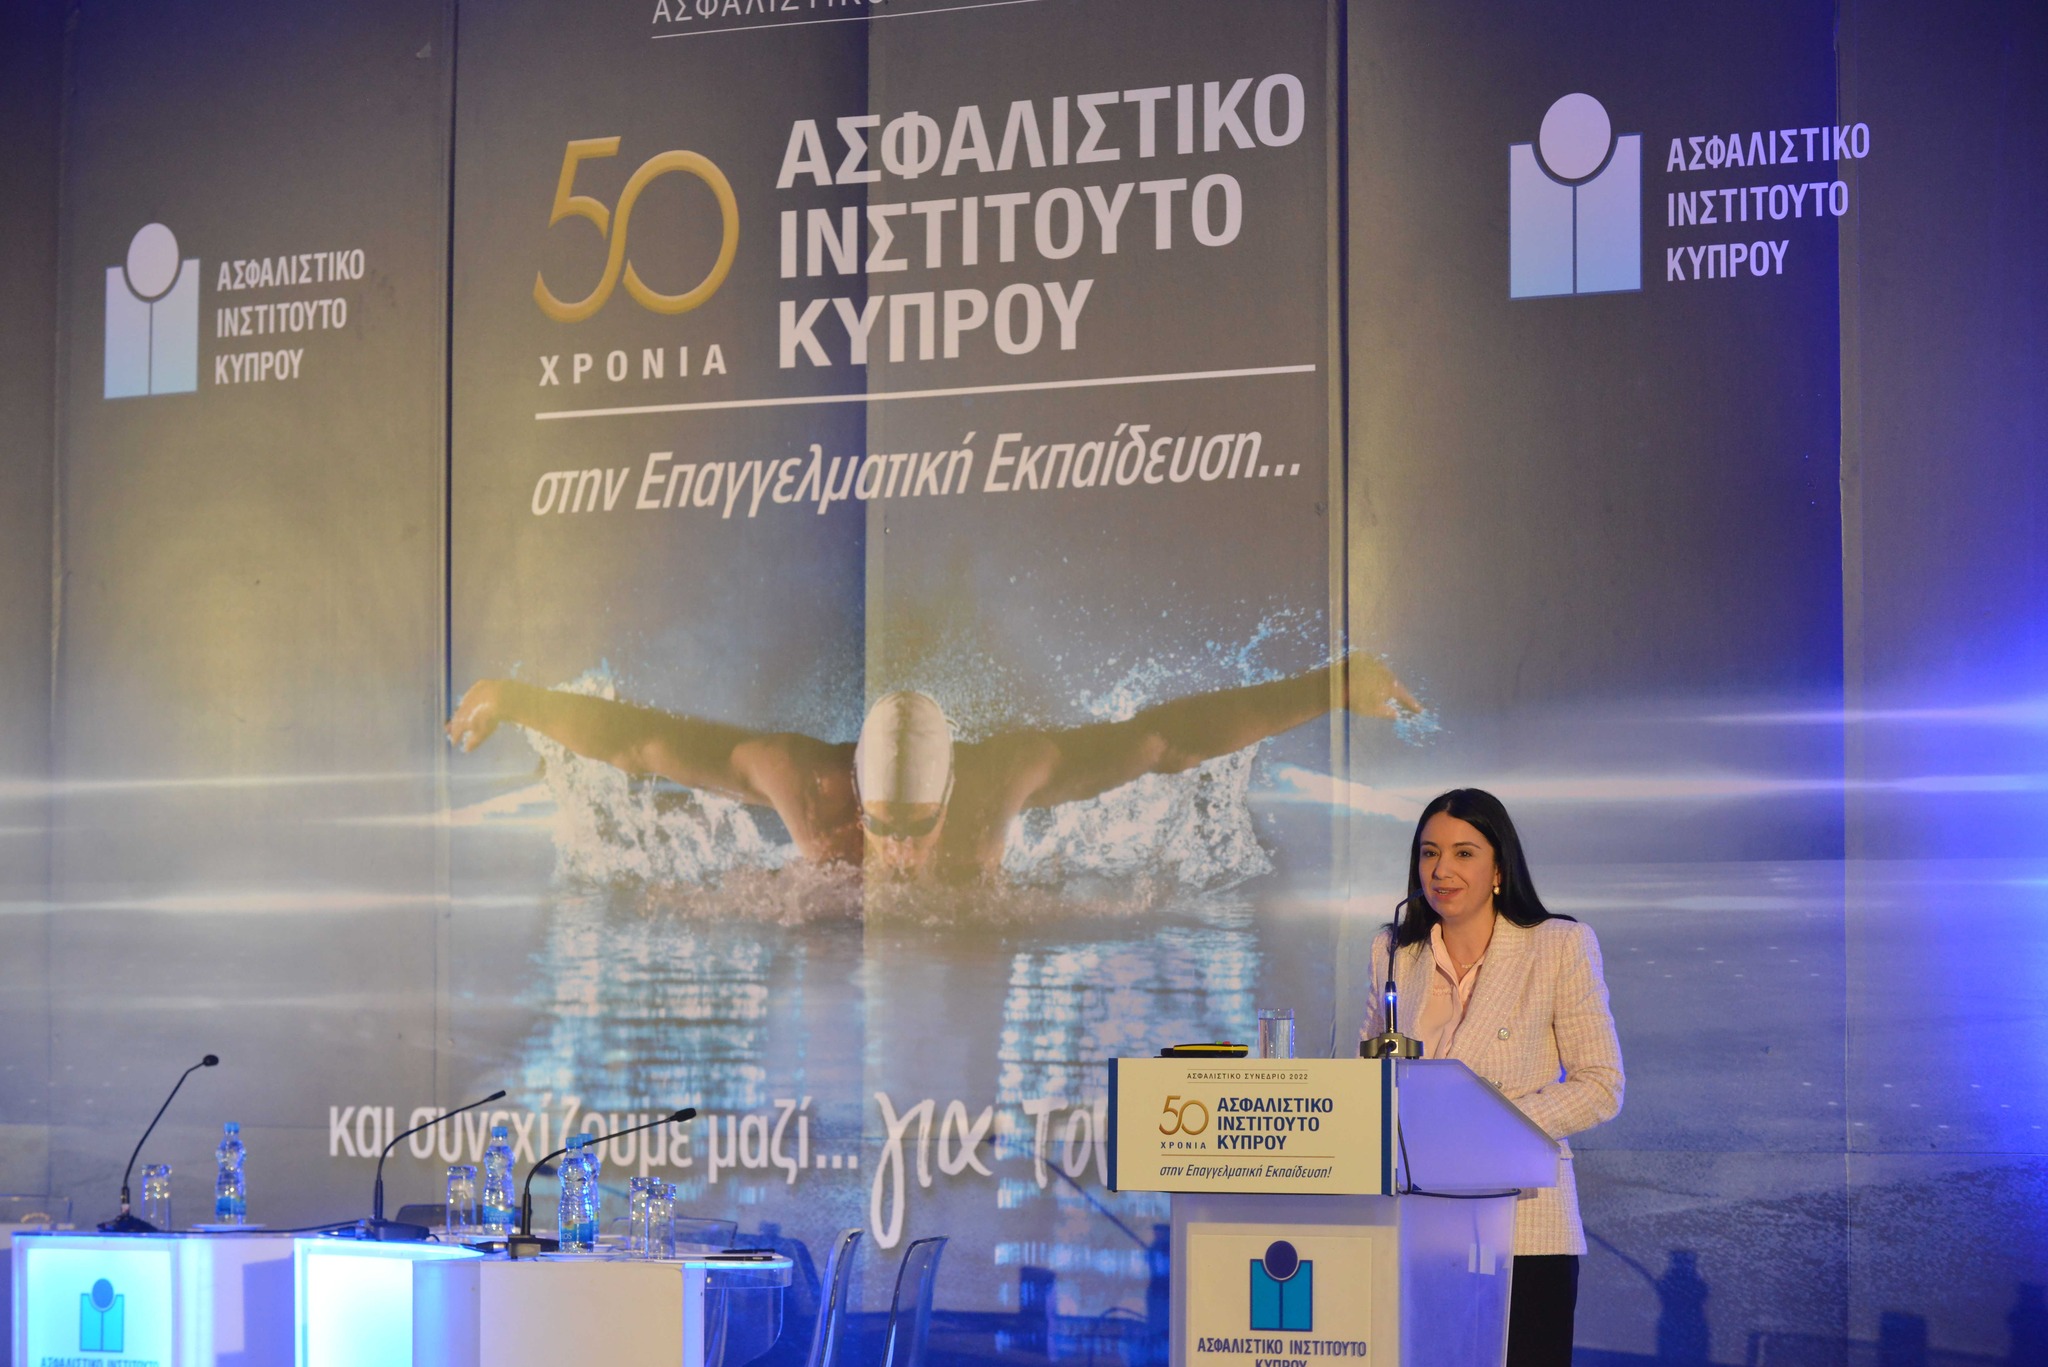 Σάβια Ορφανίδου: Ο ασφαλιστικός τομέας έχει σημαντικό αντίκτυπο στην οικονομία και την κοινωνία της χώρας μας!